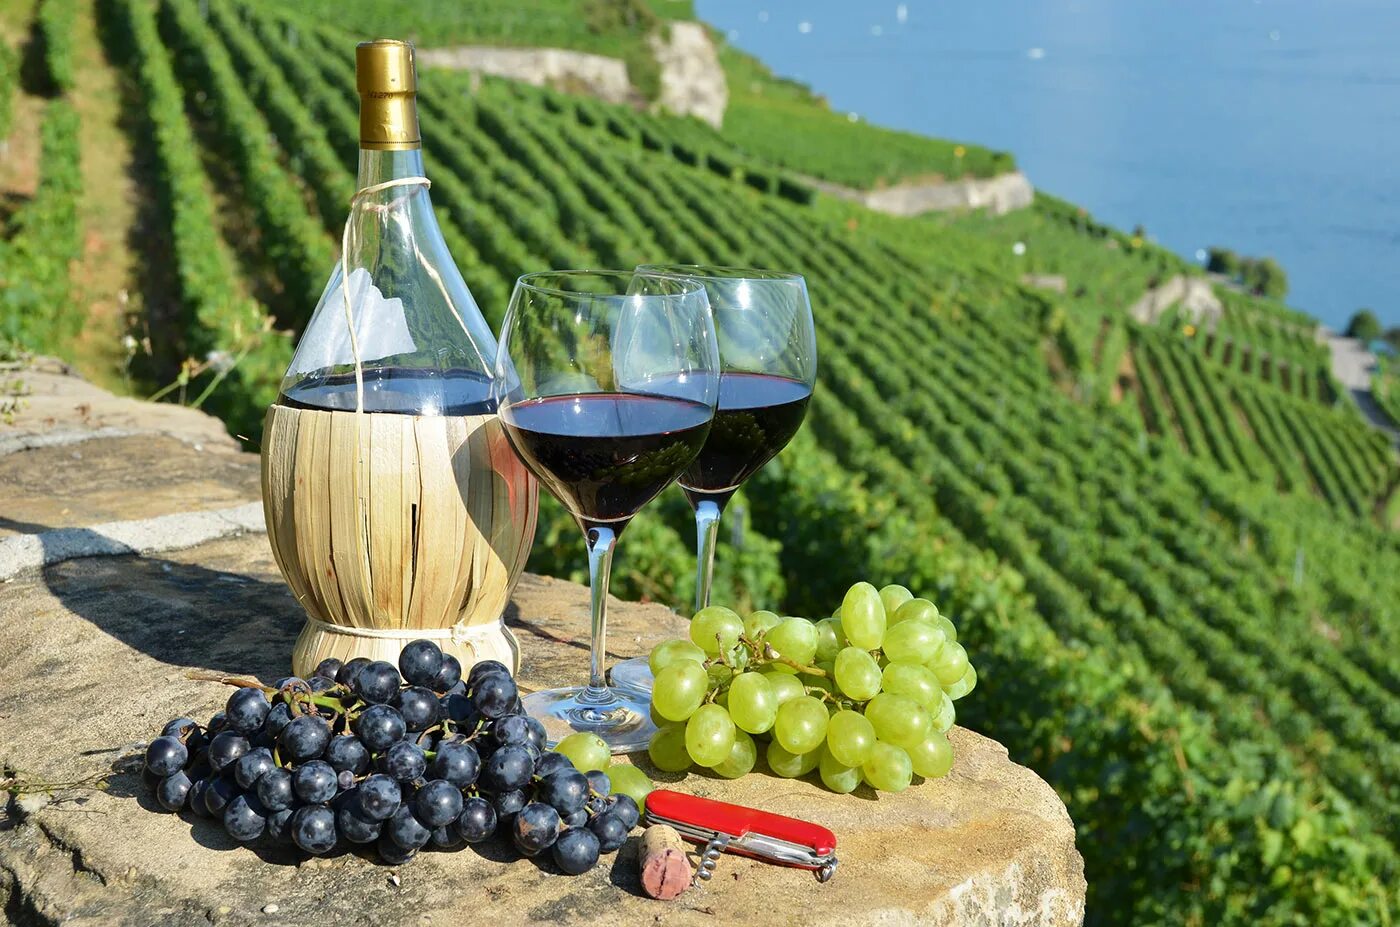 Итальянское вино. Тоскана Италия винодельни. Вино Тоскана Италия. Праздник вина «Ртвели». Грузия. Италия виноградники Тосканы.